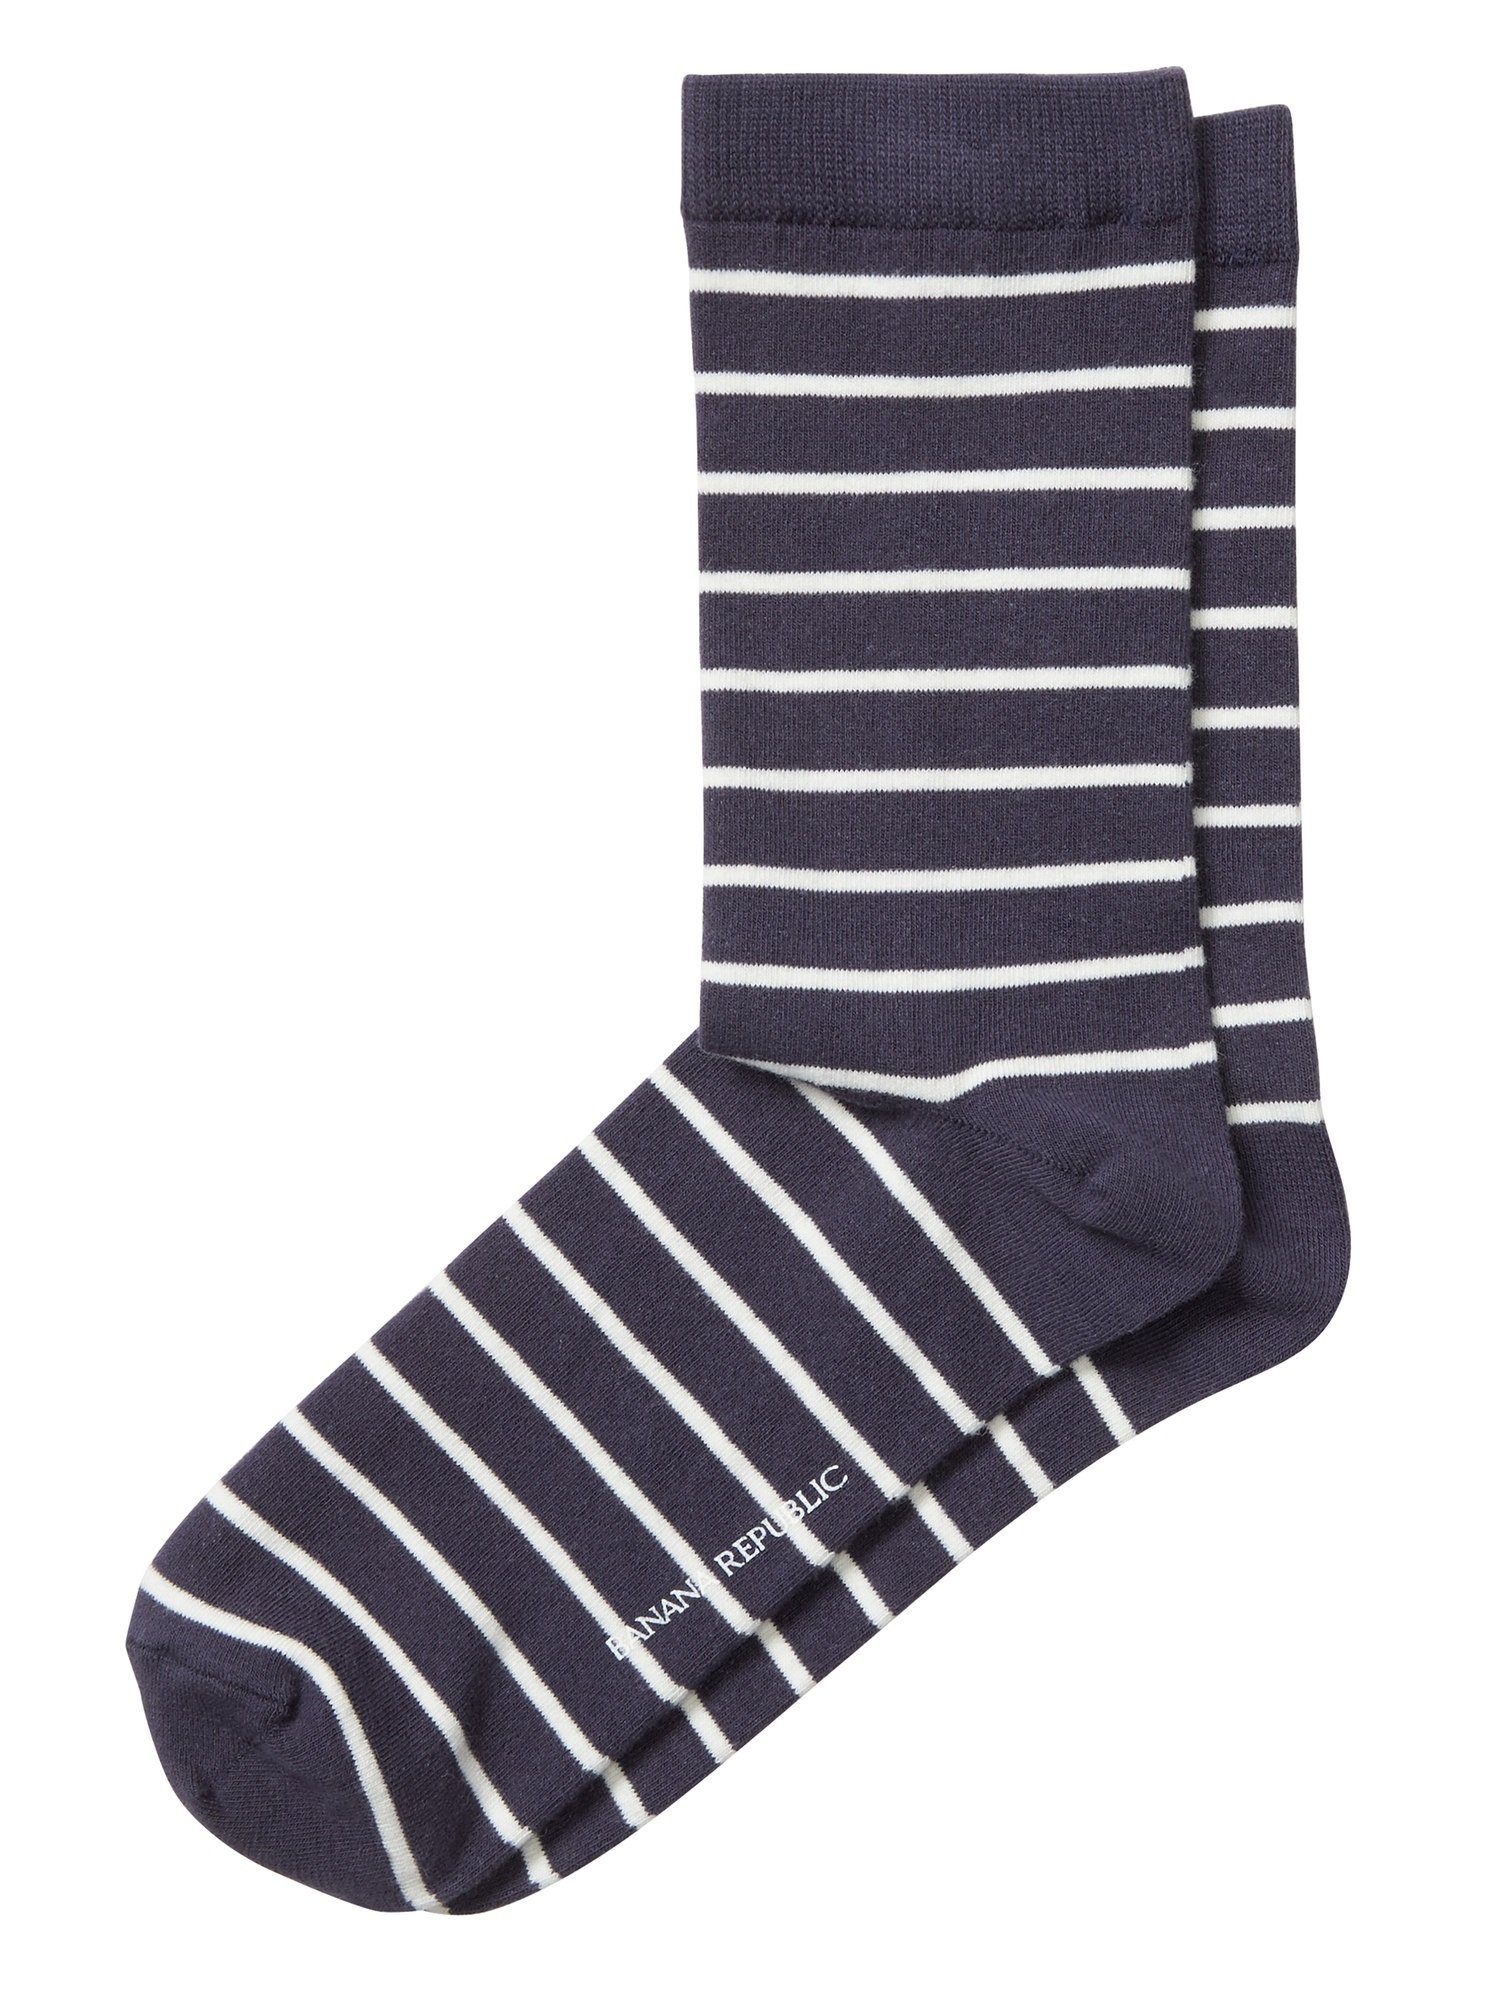 Çizgi Desenli Çorap product image